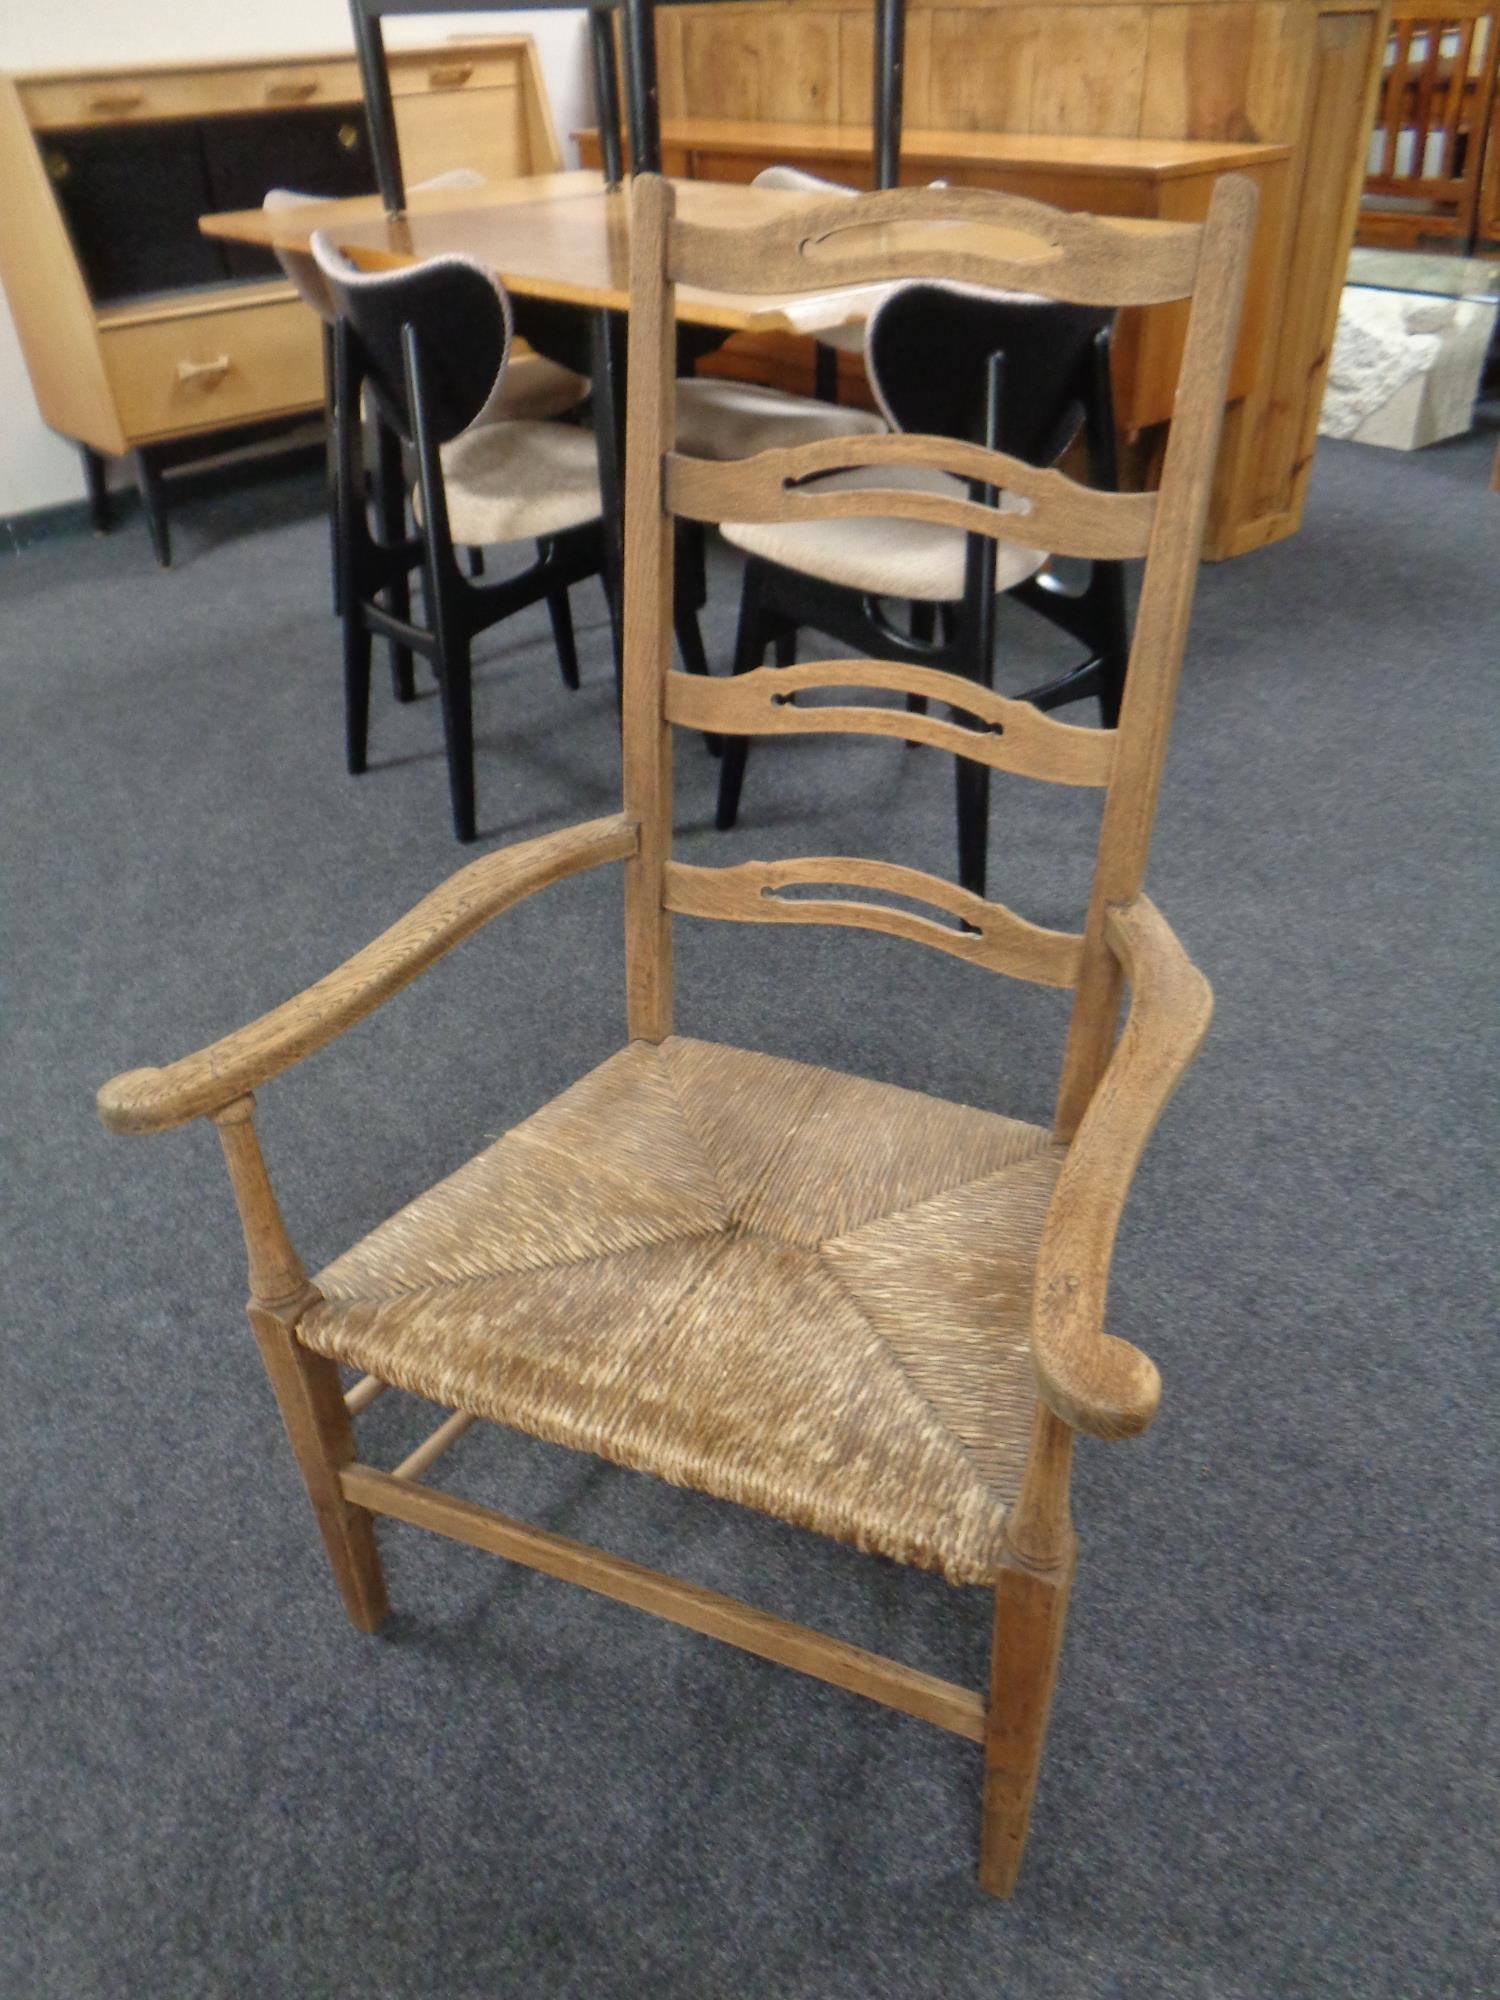 An oak ladder backed chair